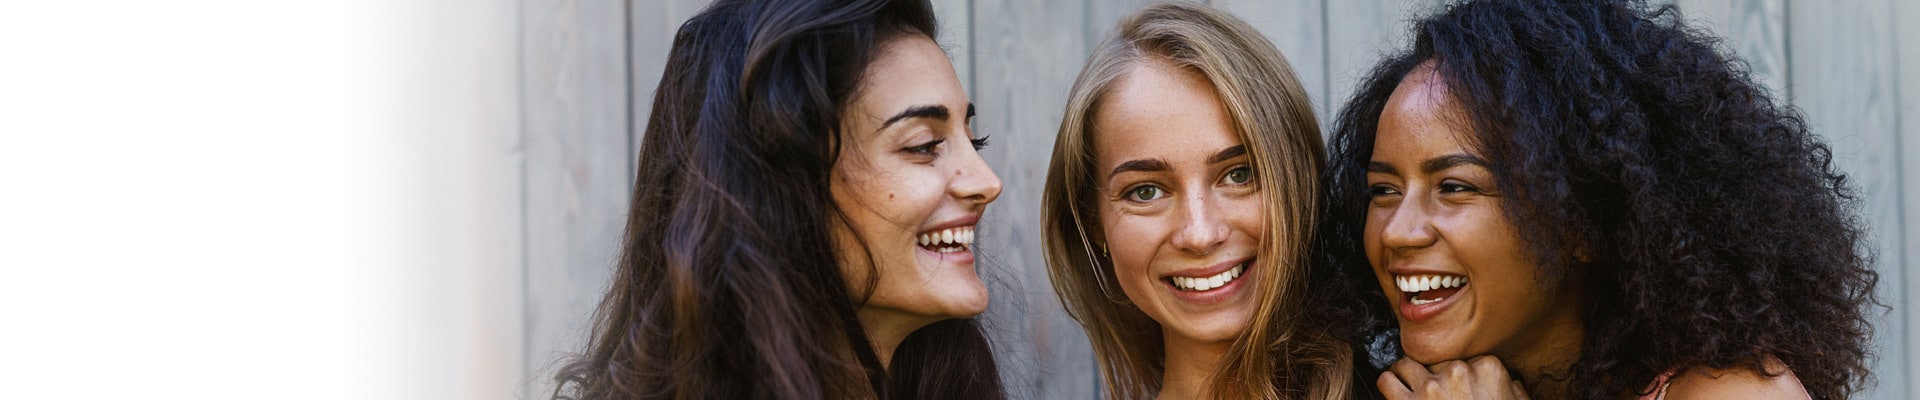 Teens smiling iSmile Orthodontics Seattle WA